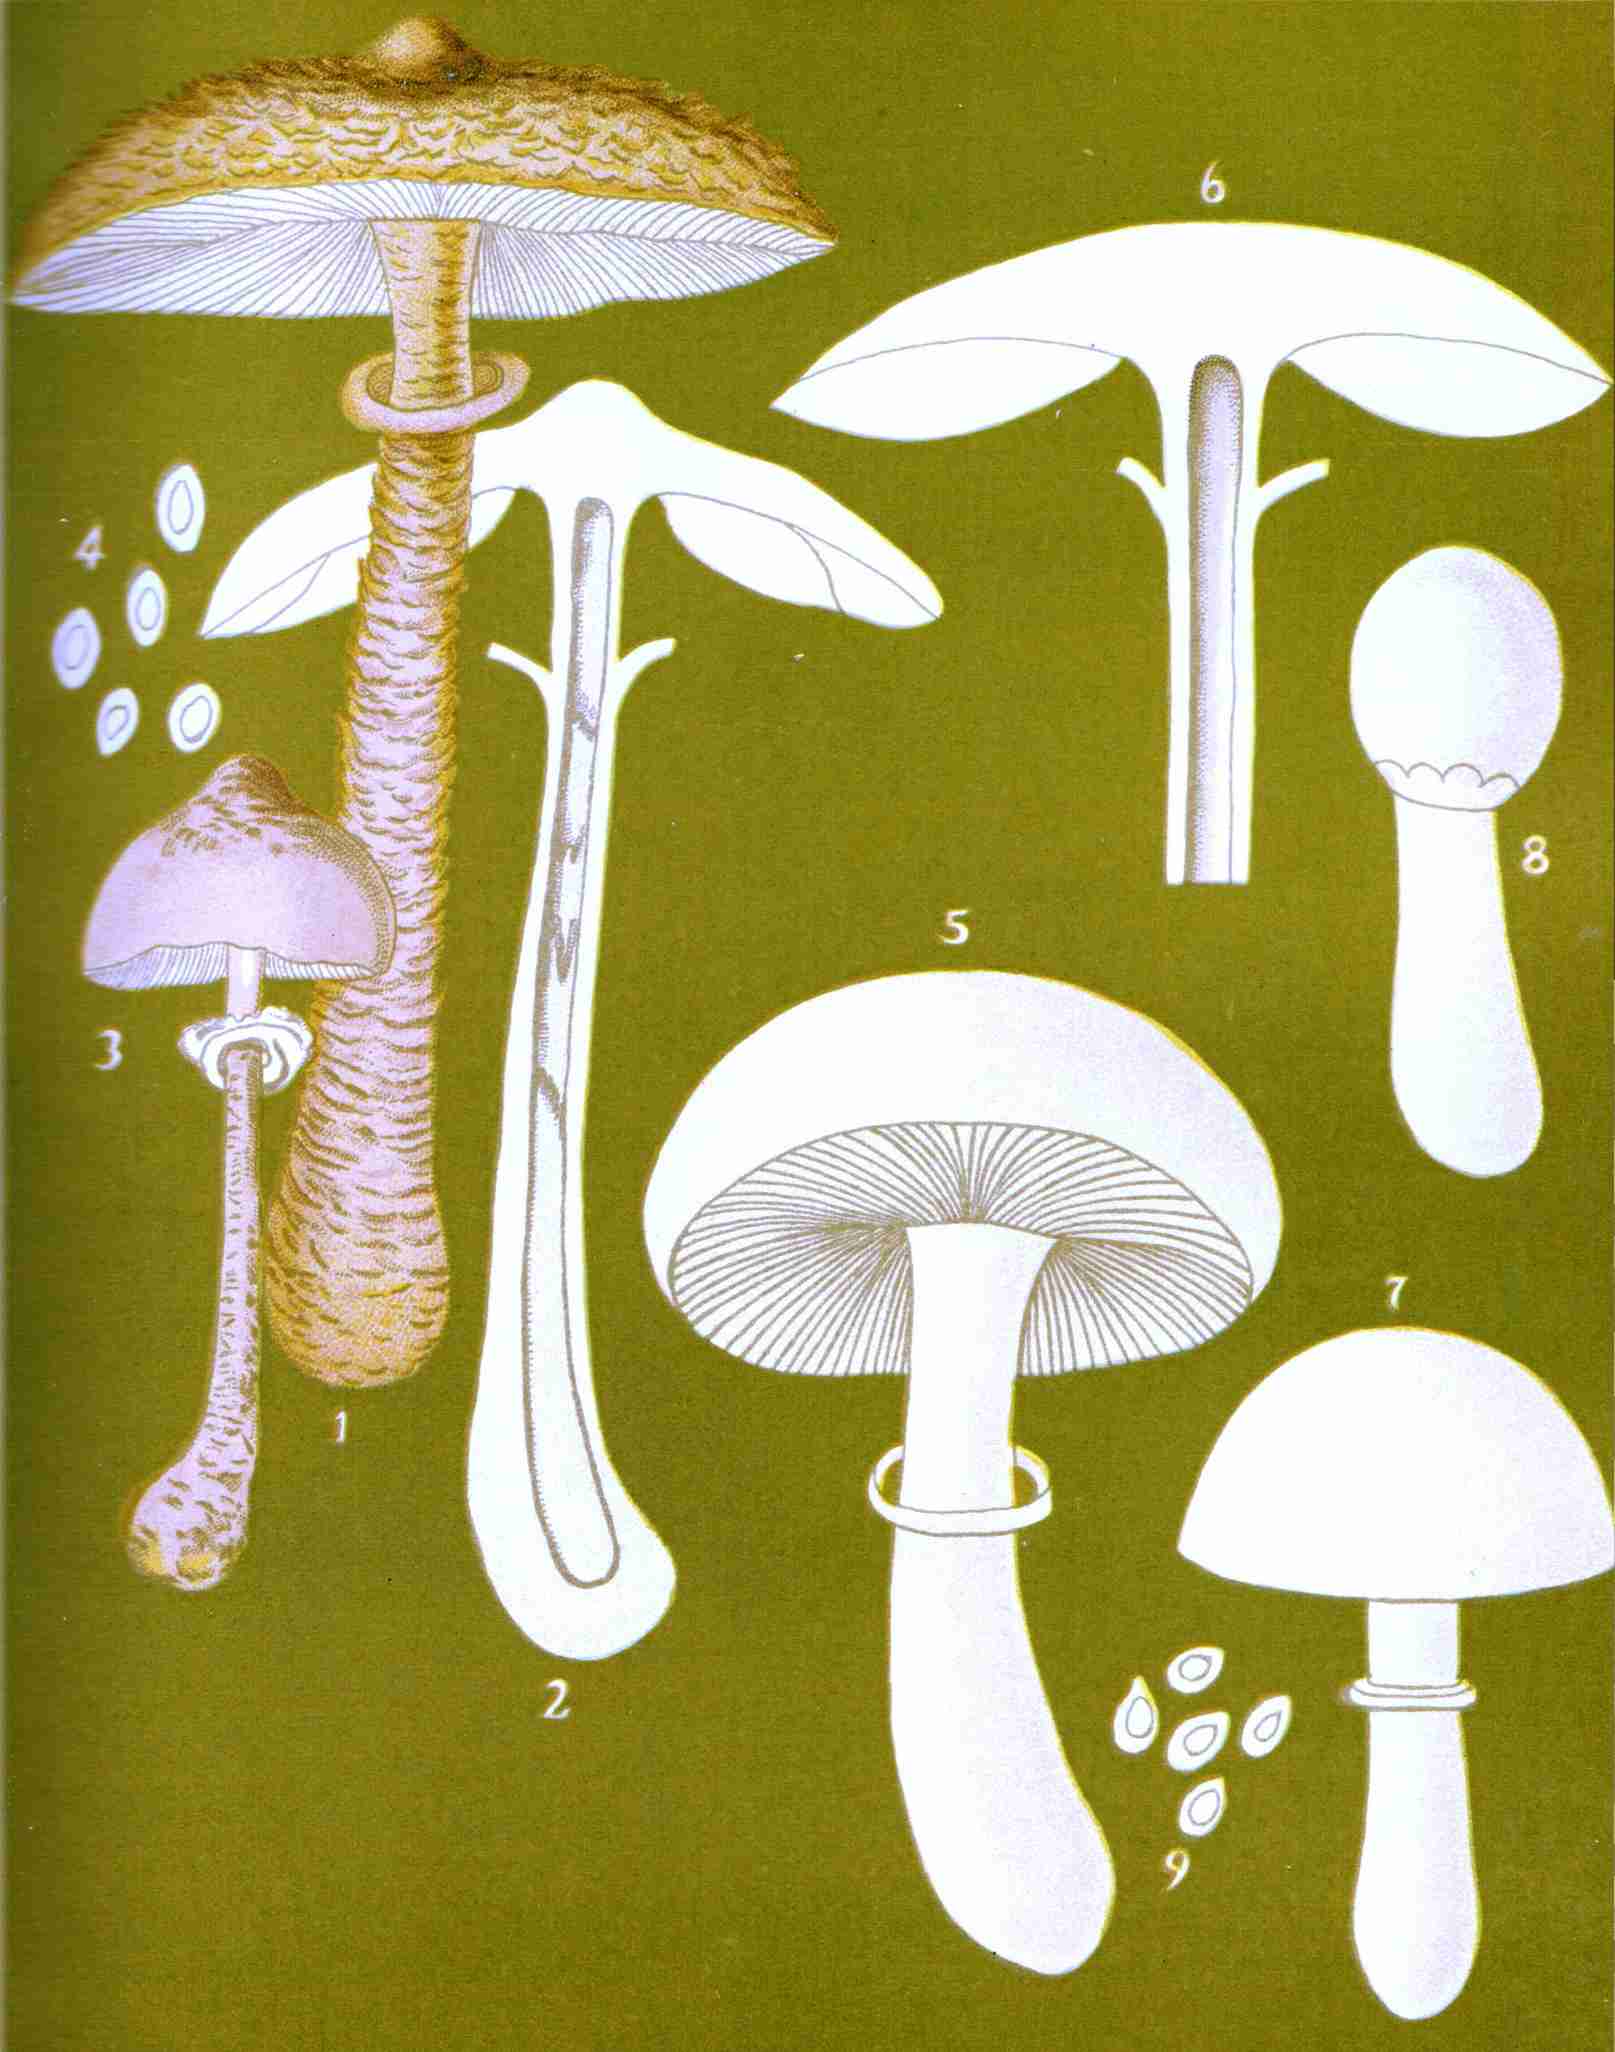 Parasol Mushroom Facts